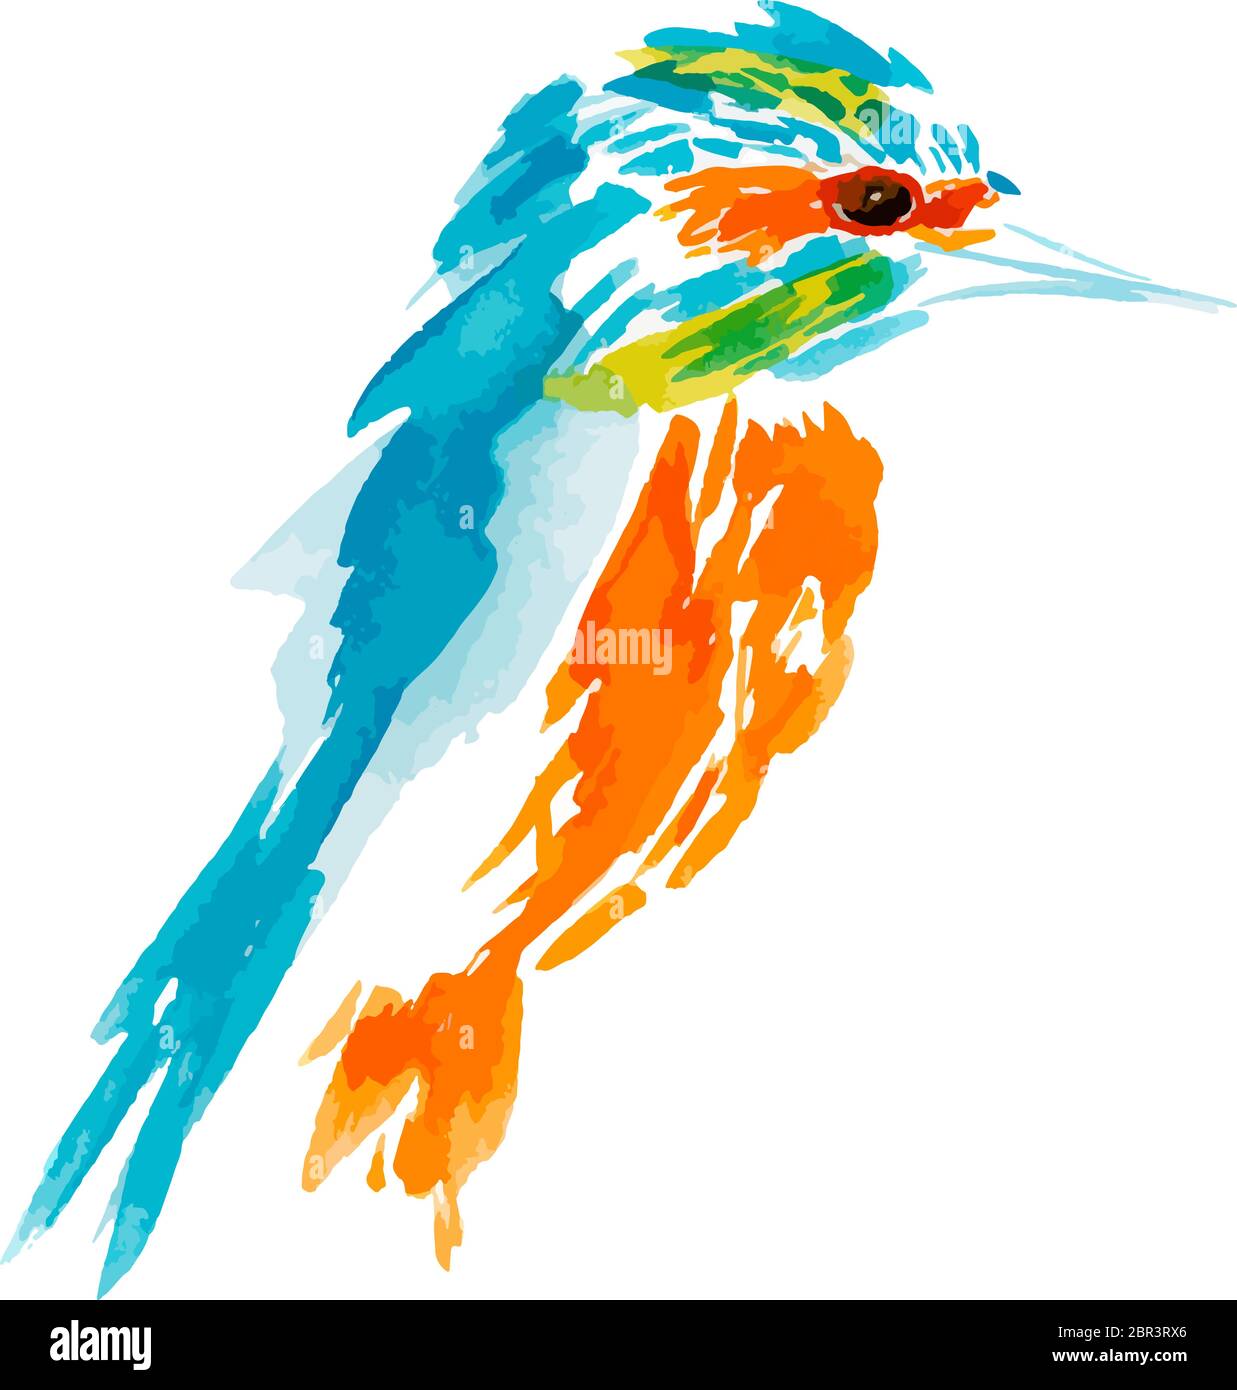 vektor-Illustration isolierte Vögel. Vögel fliegen, Tiere, Vogel Silhouette, Vogel Vektor, Eisvogel Stock Vektor